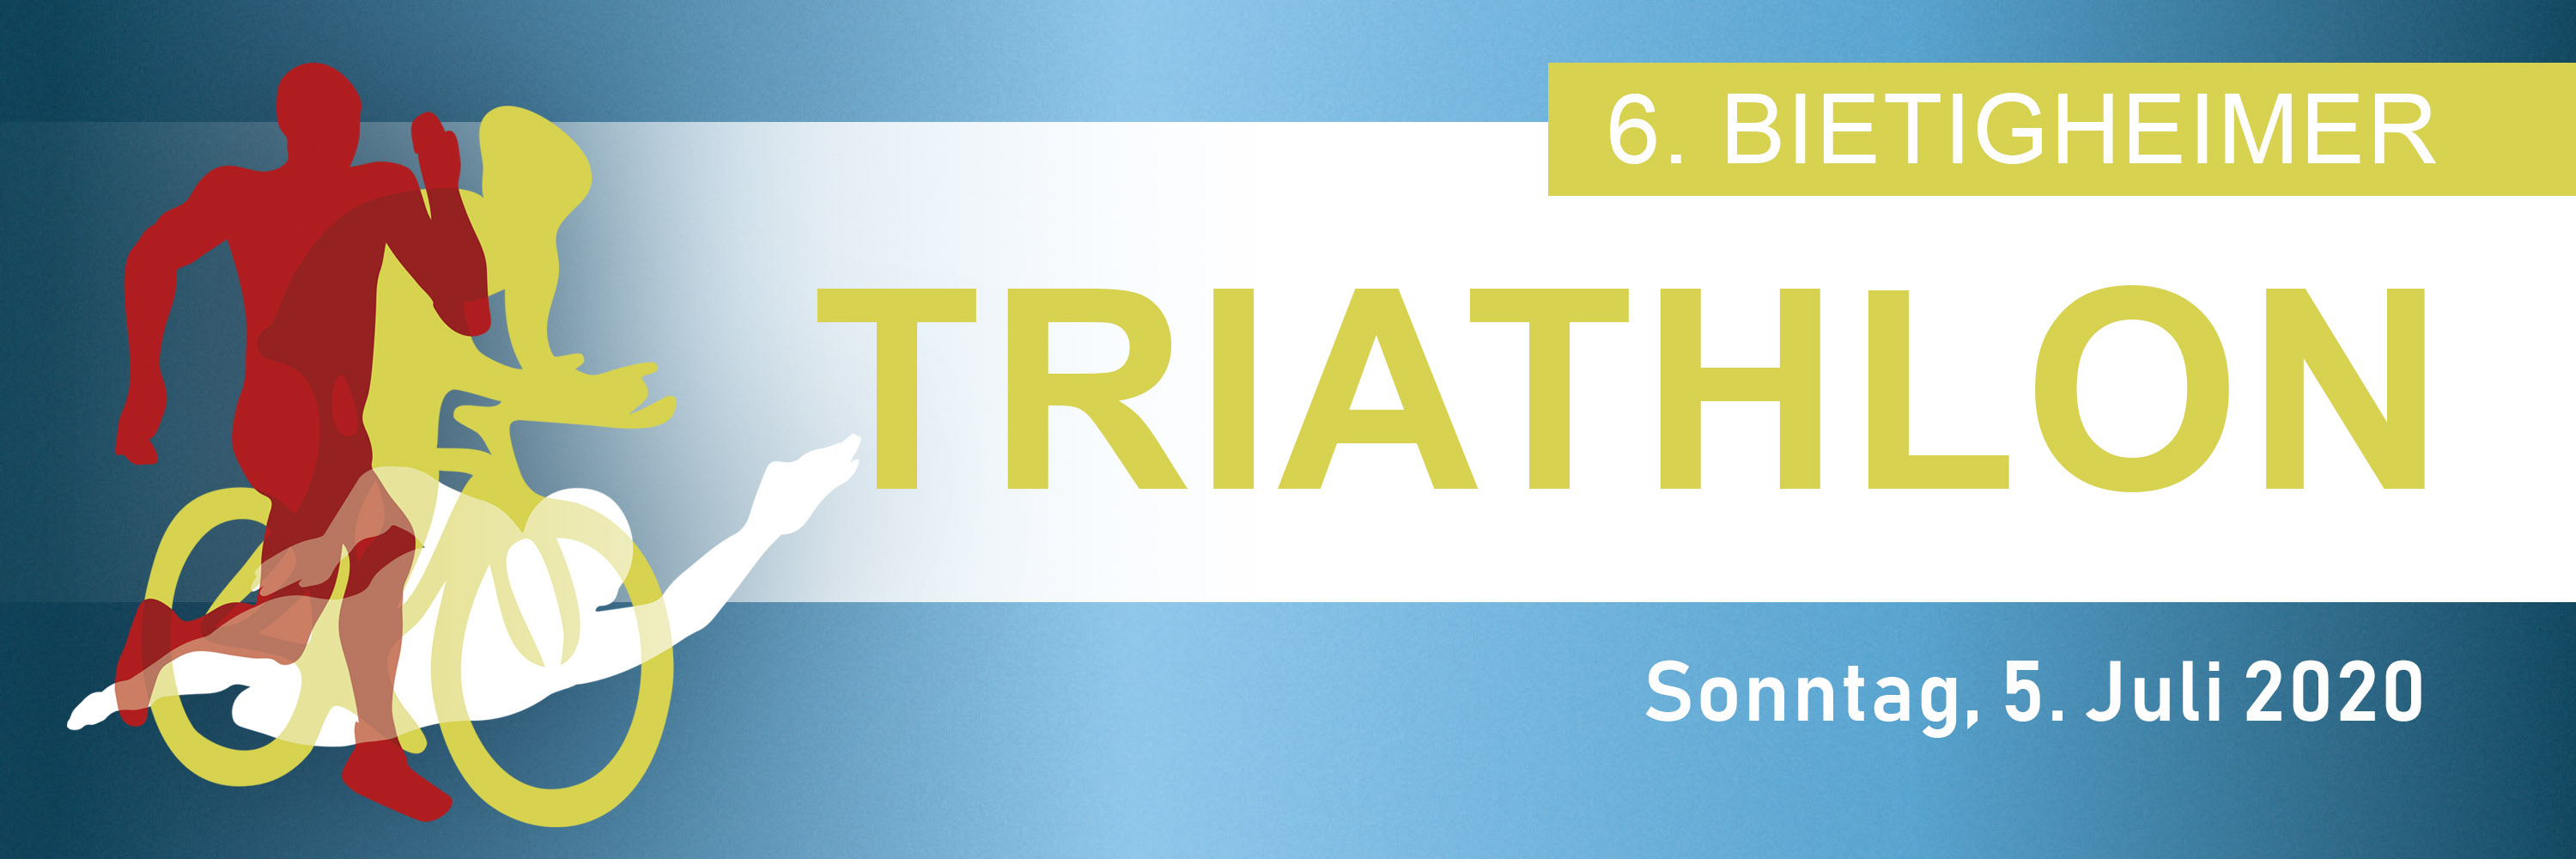 6. Bietigheimer Triathlon 2020